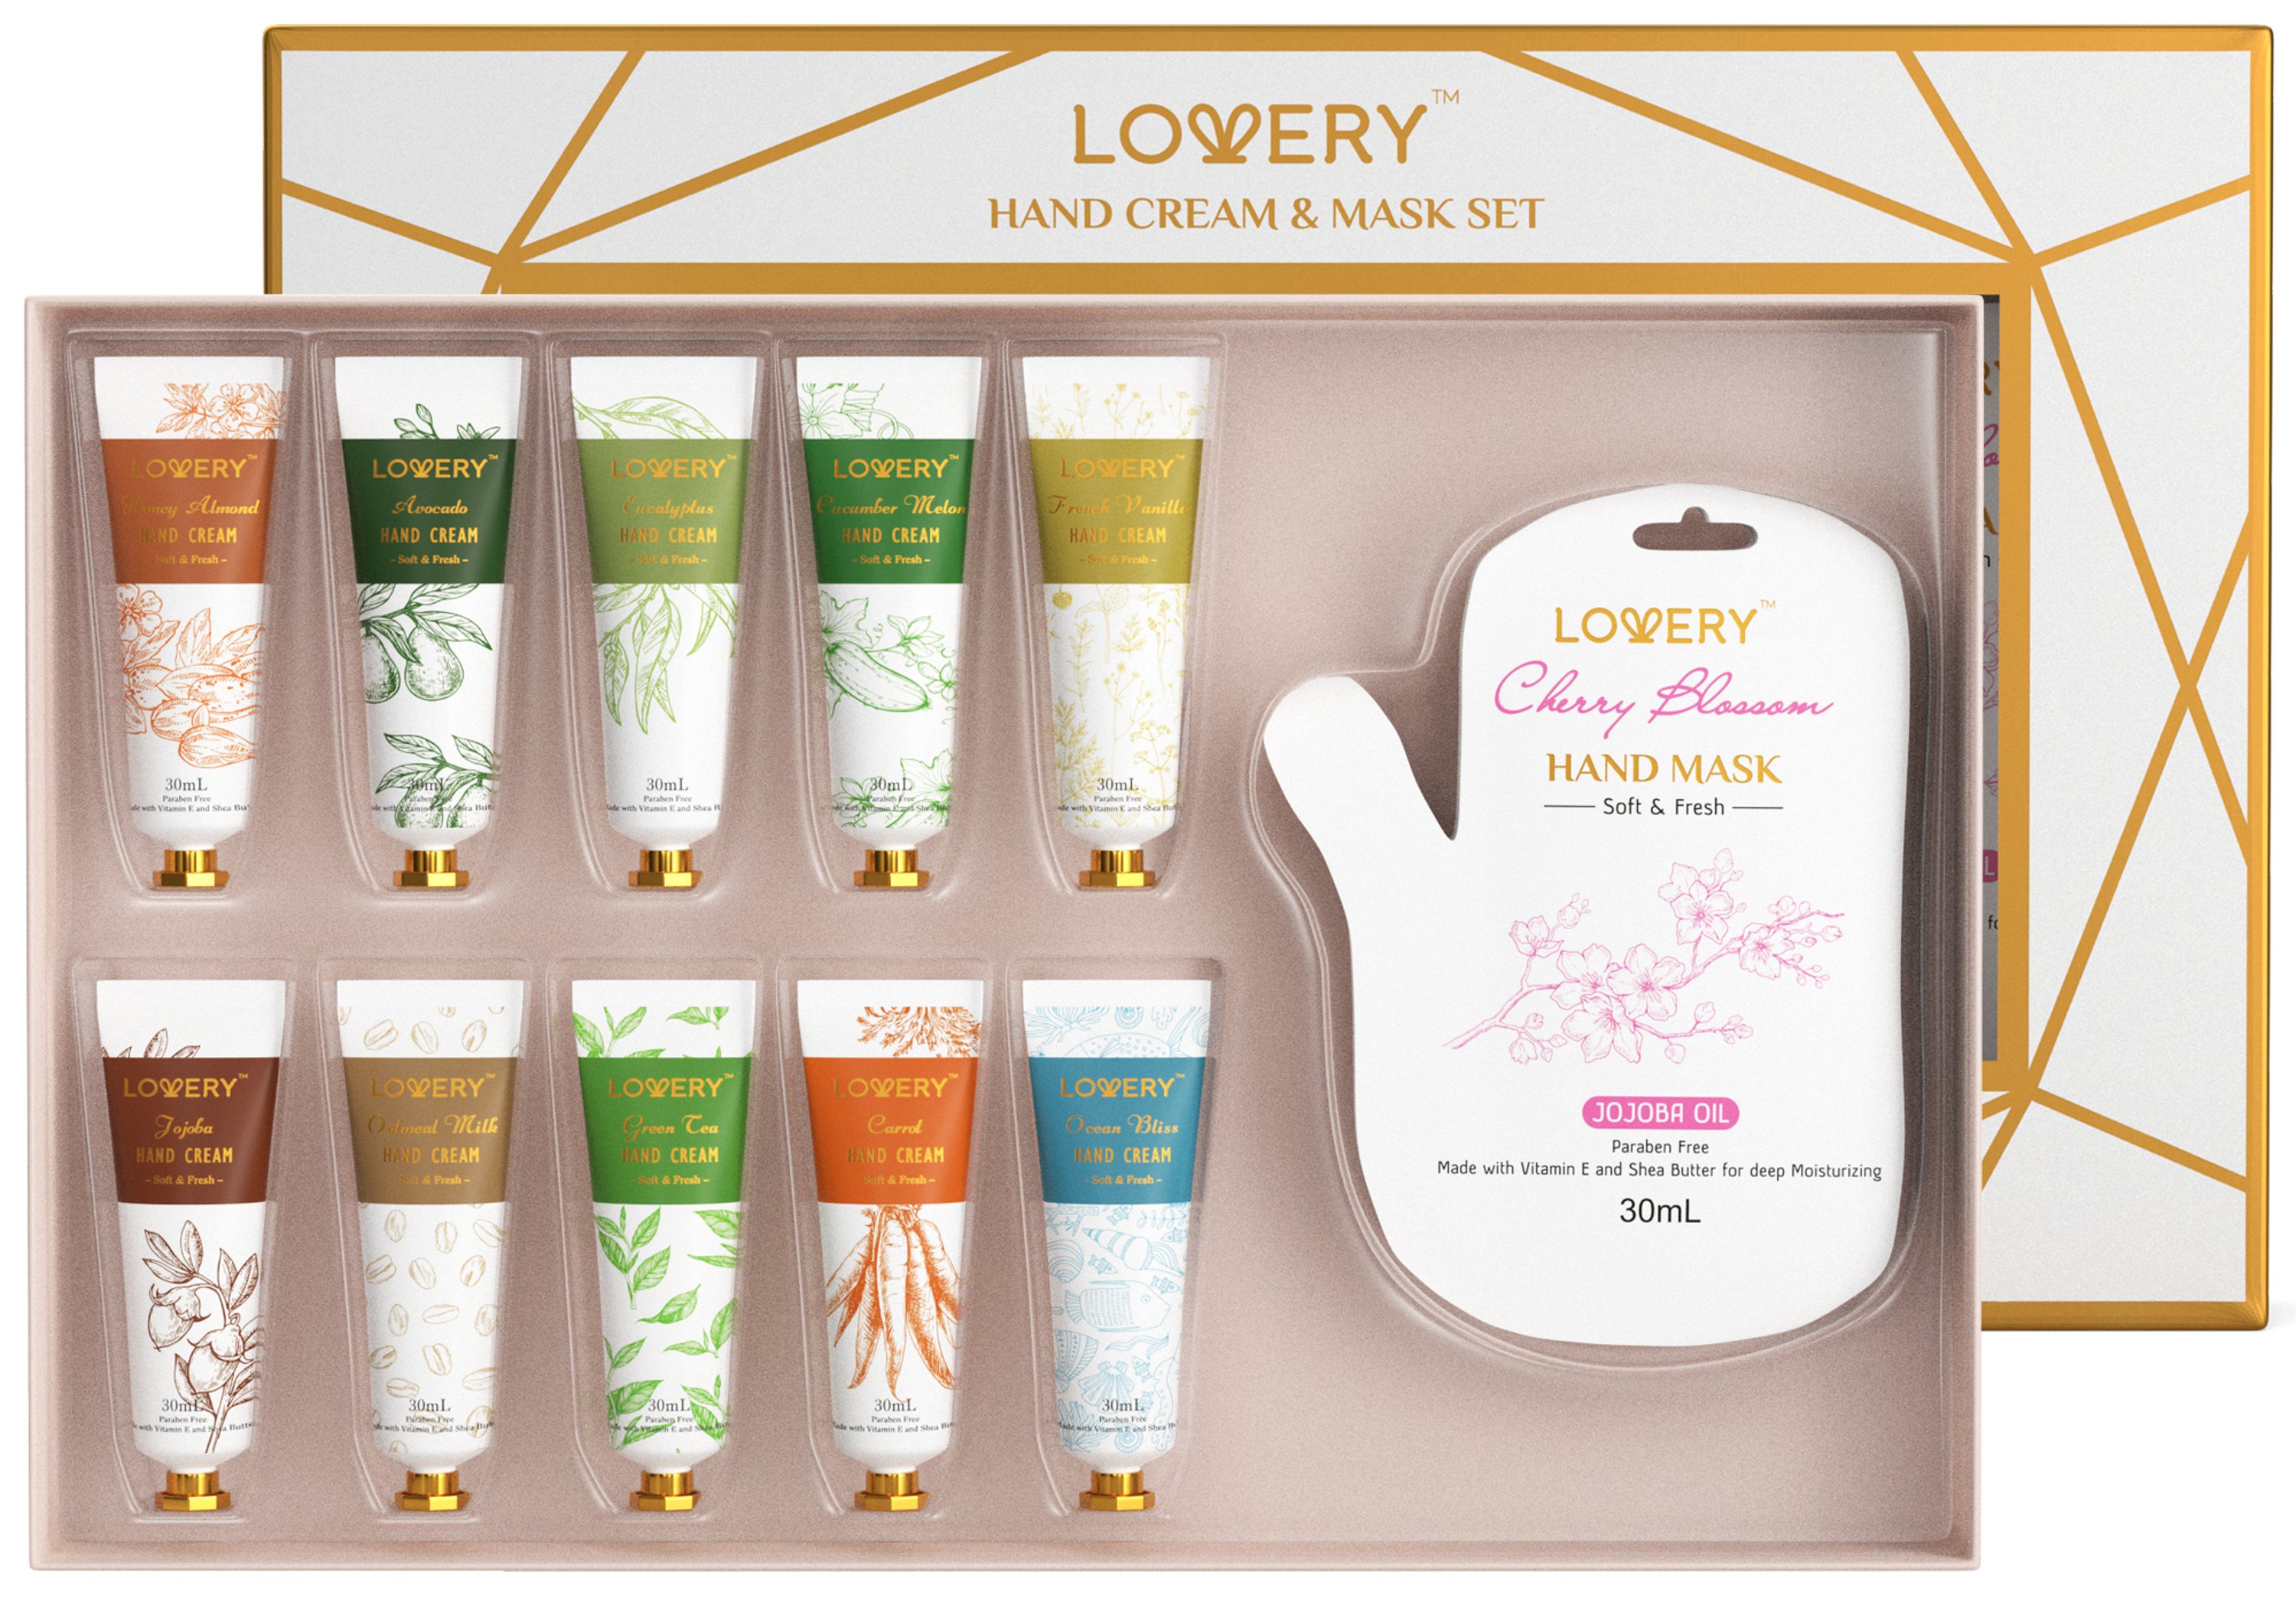 Lovery Hand Cream & Hand Mask Gift Set